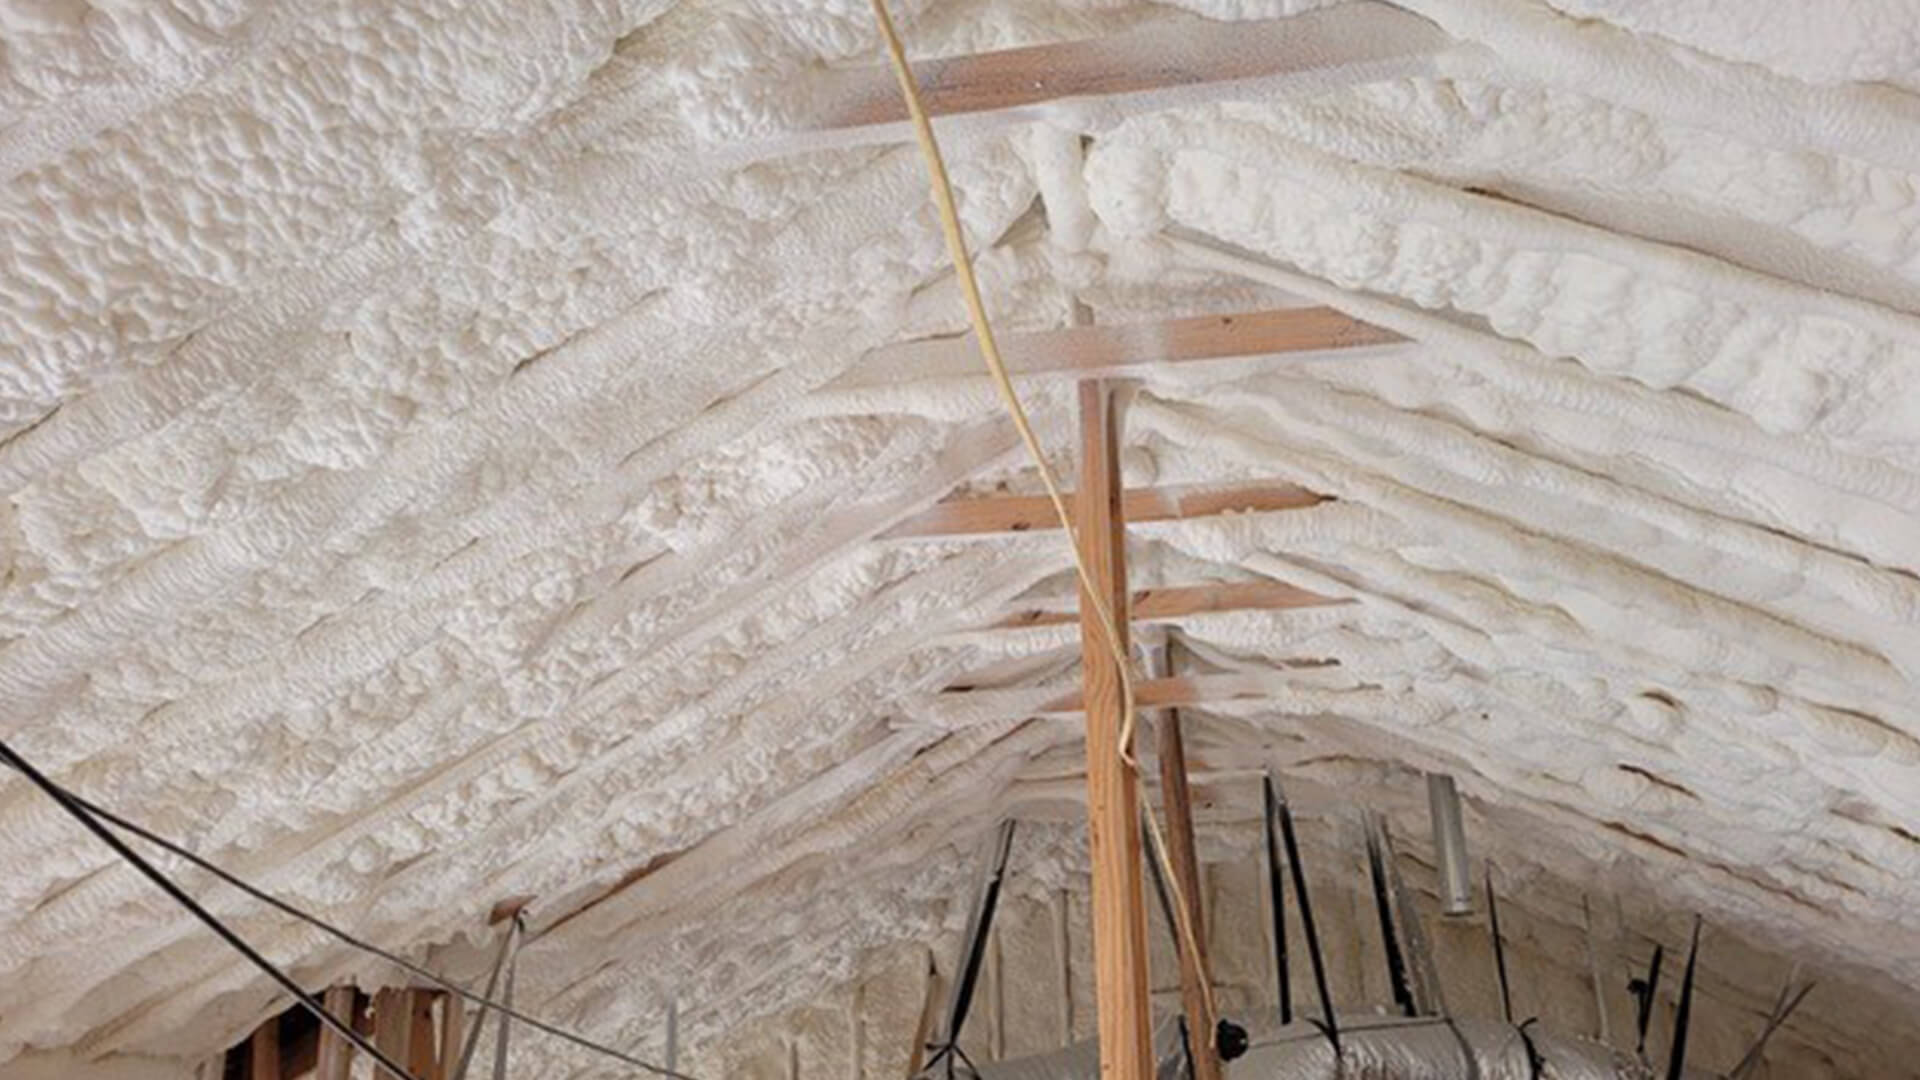 Northwest Austin garage insulation